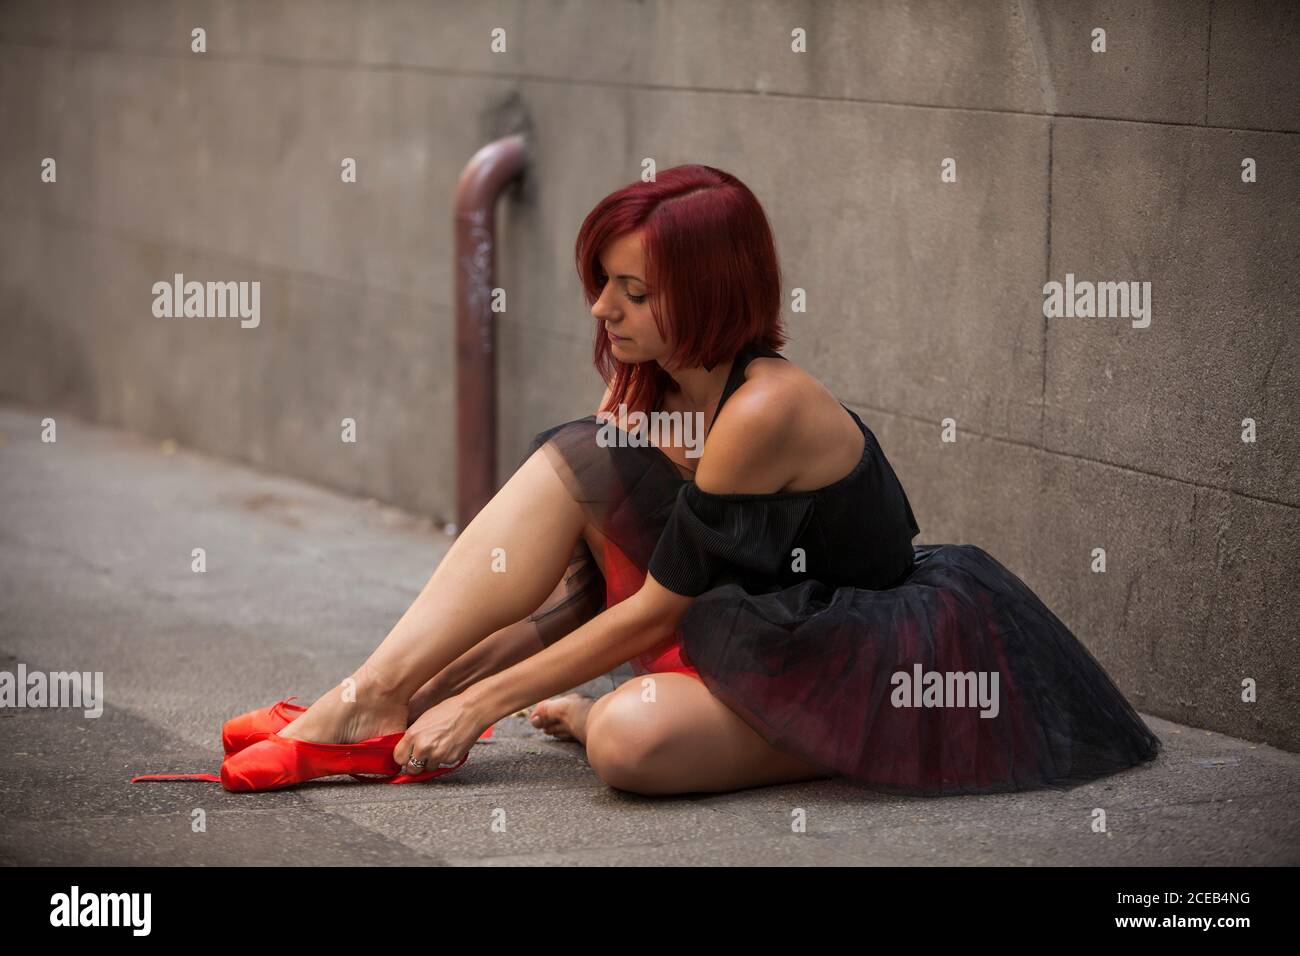 Testa ballerina rossa con tutu nero che batte le punte del balletto rosso sulla strada Foto Stock